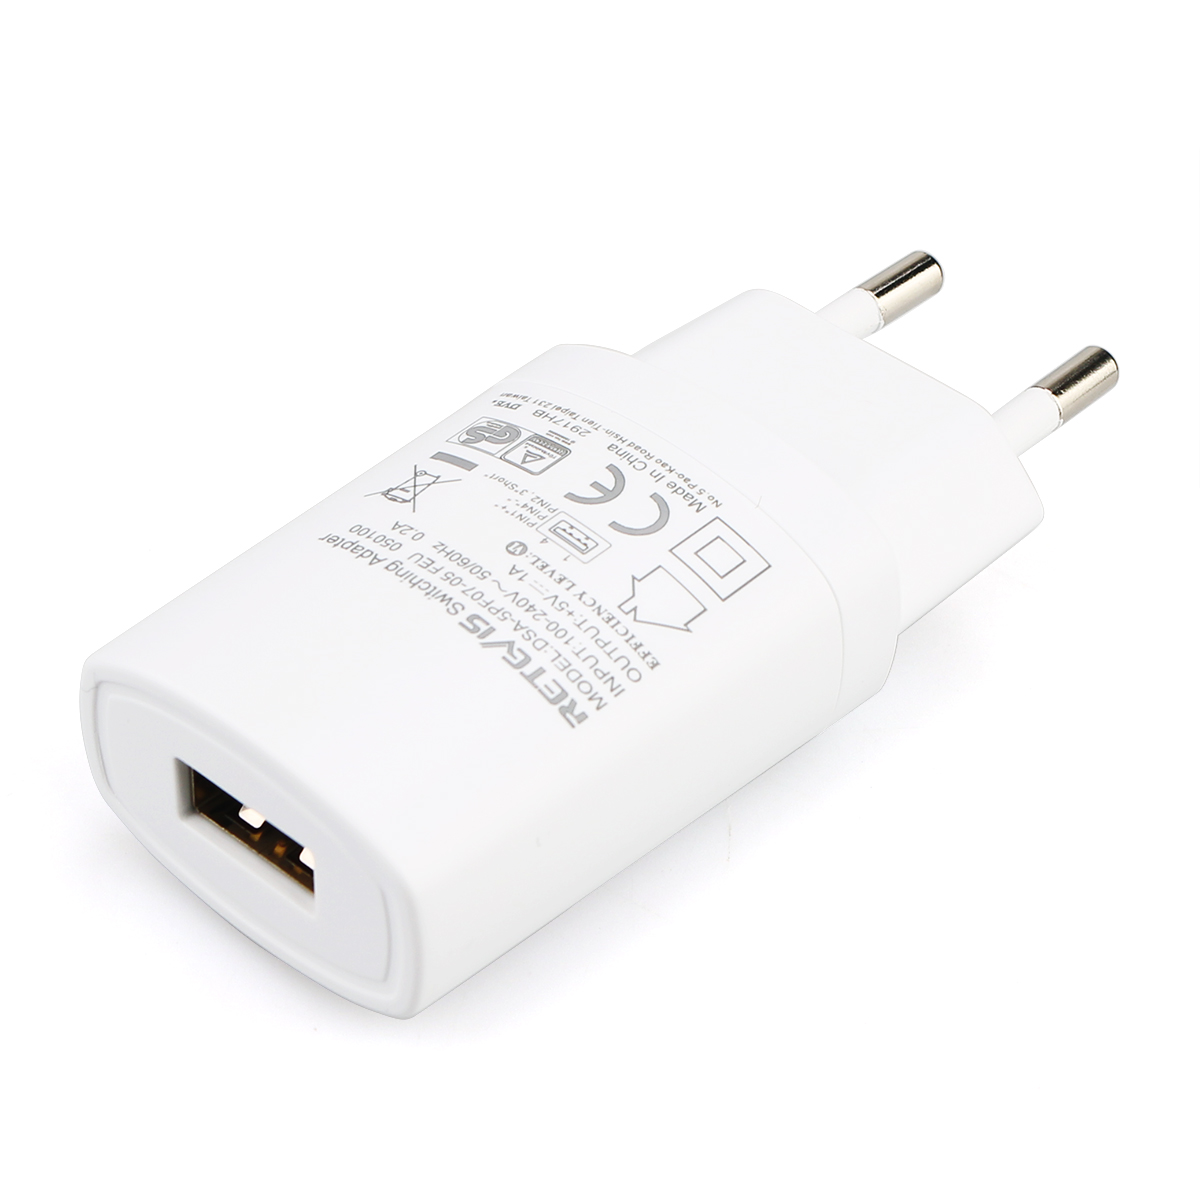 White Universal 5V 1A USB AC Power Adapter EU